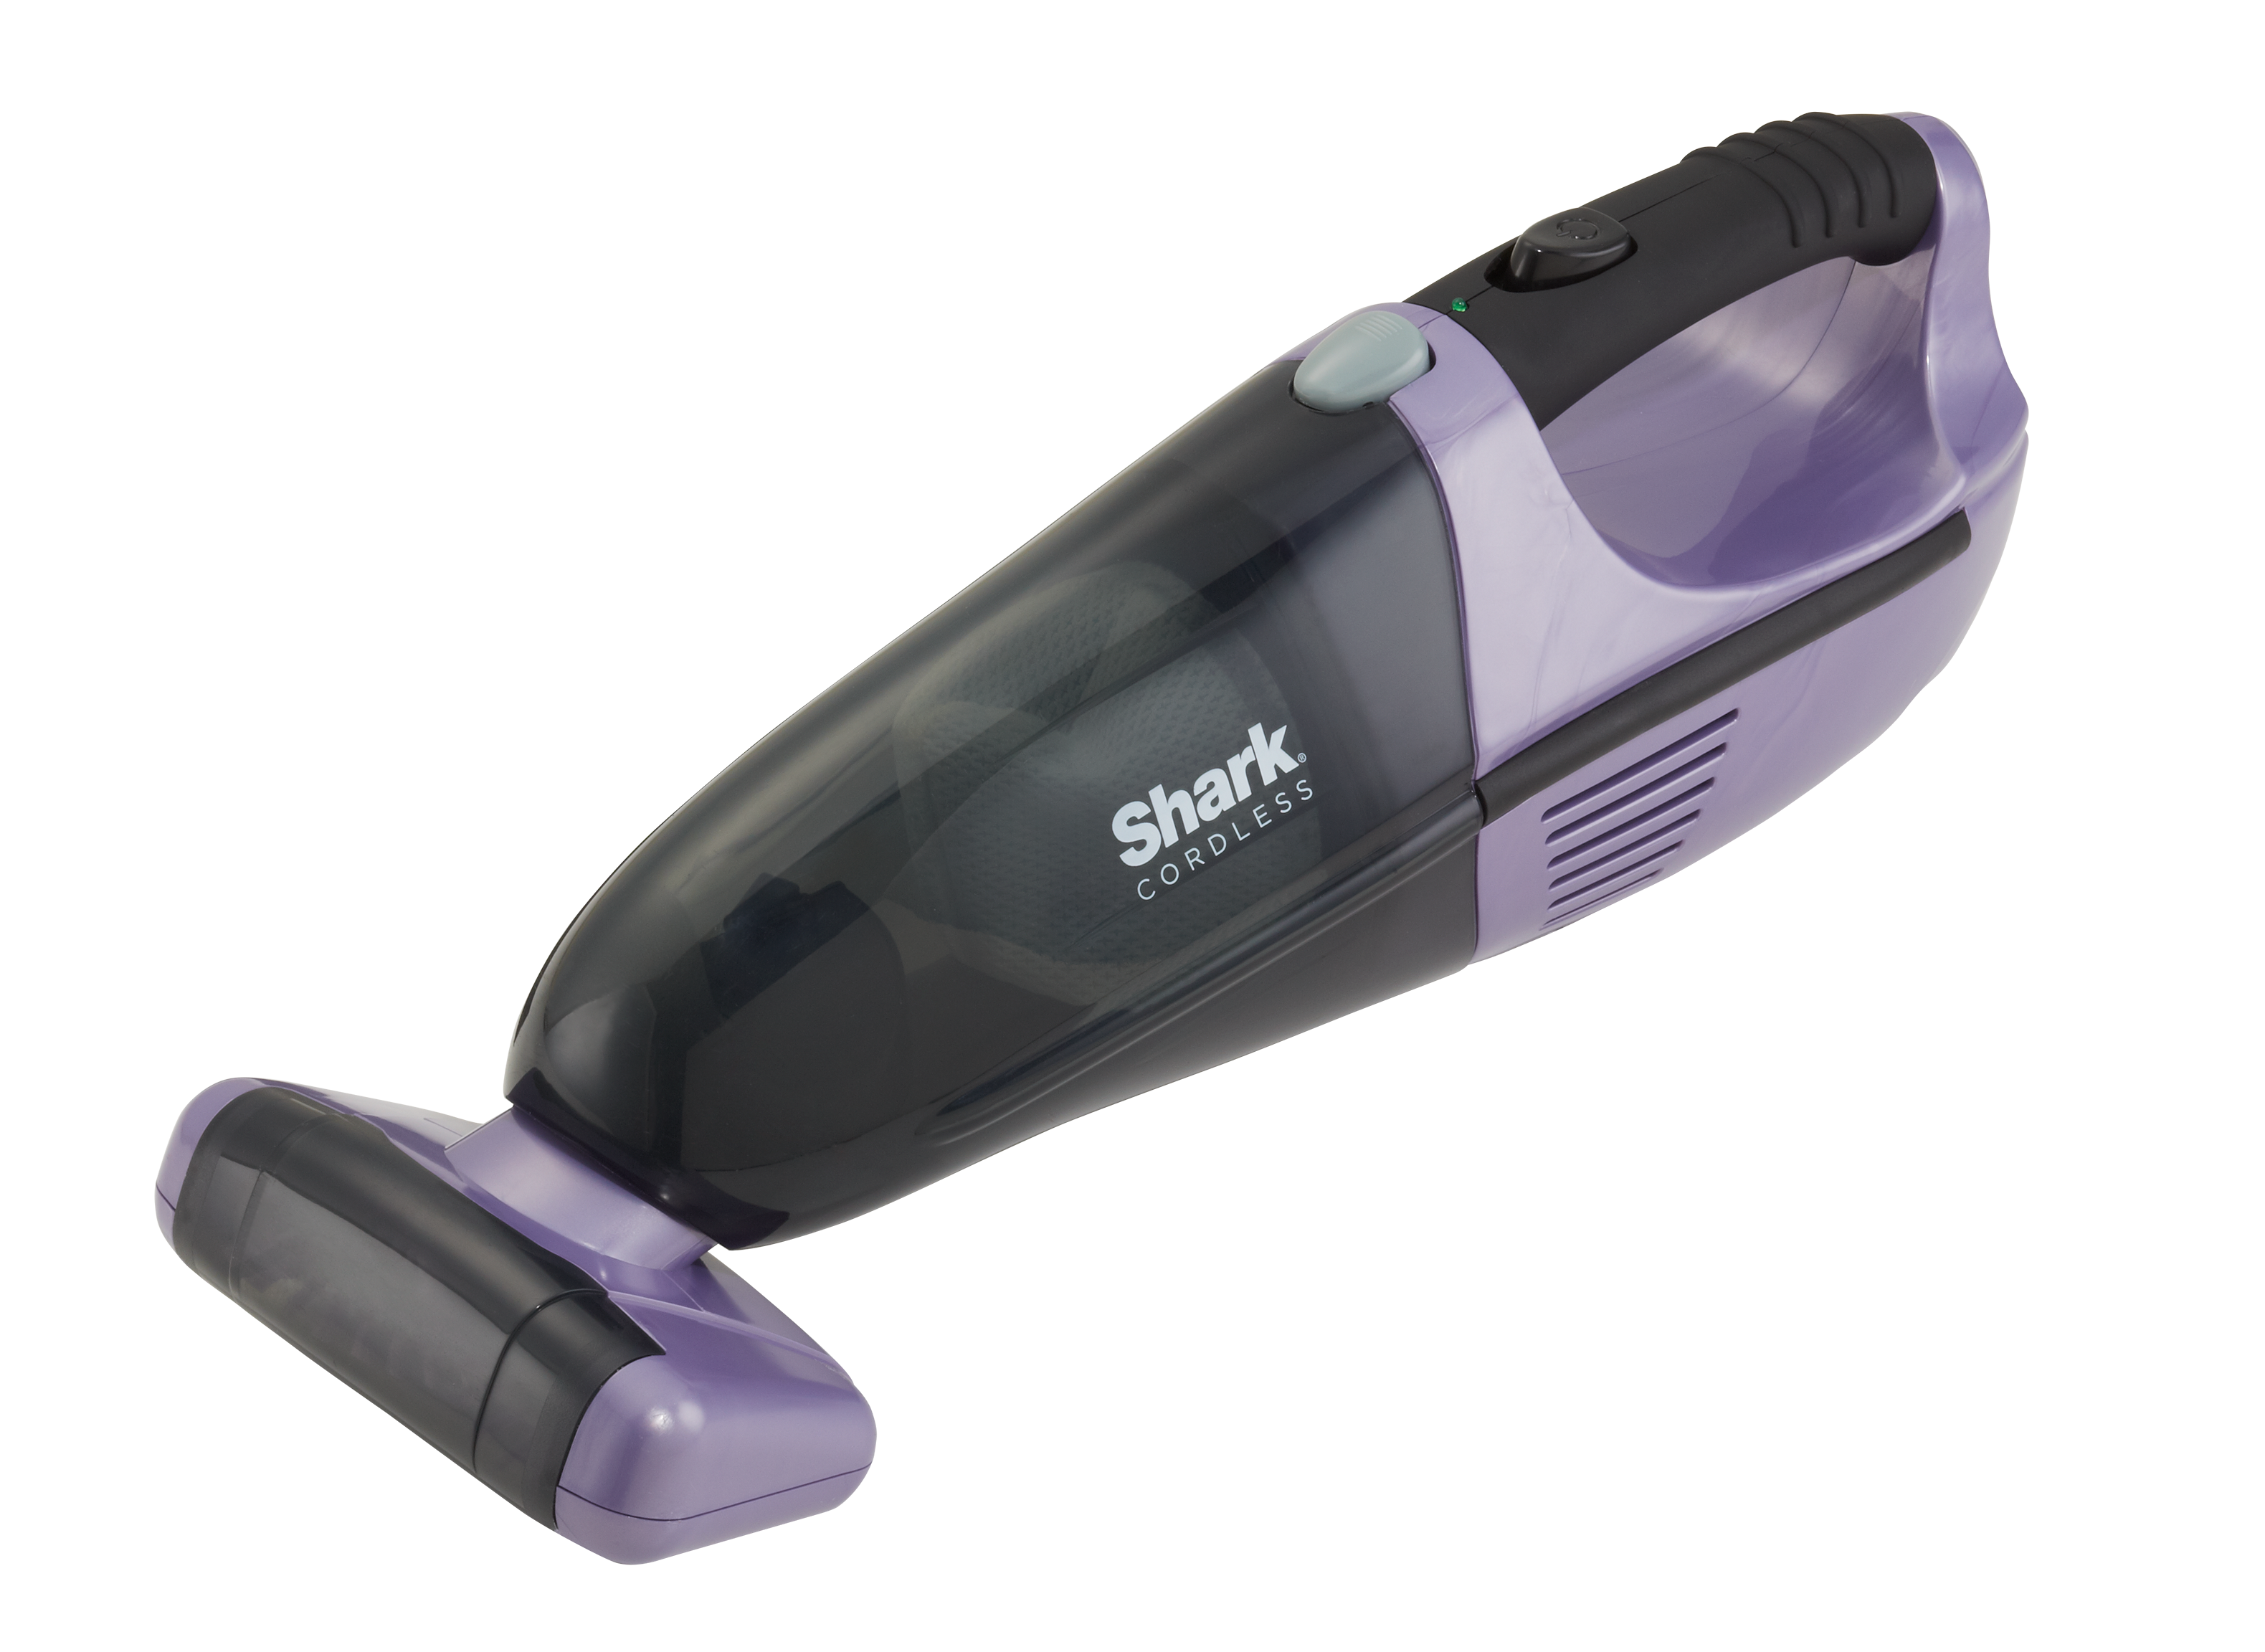 Shark Pet Perfect 2 Cordless Handheld Vacuum New Dirt Pet Hair Cleaner Bagless 